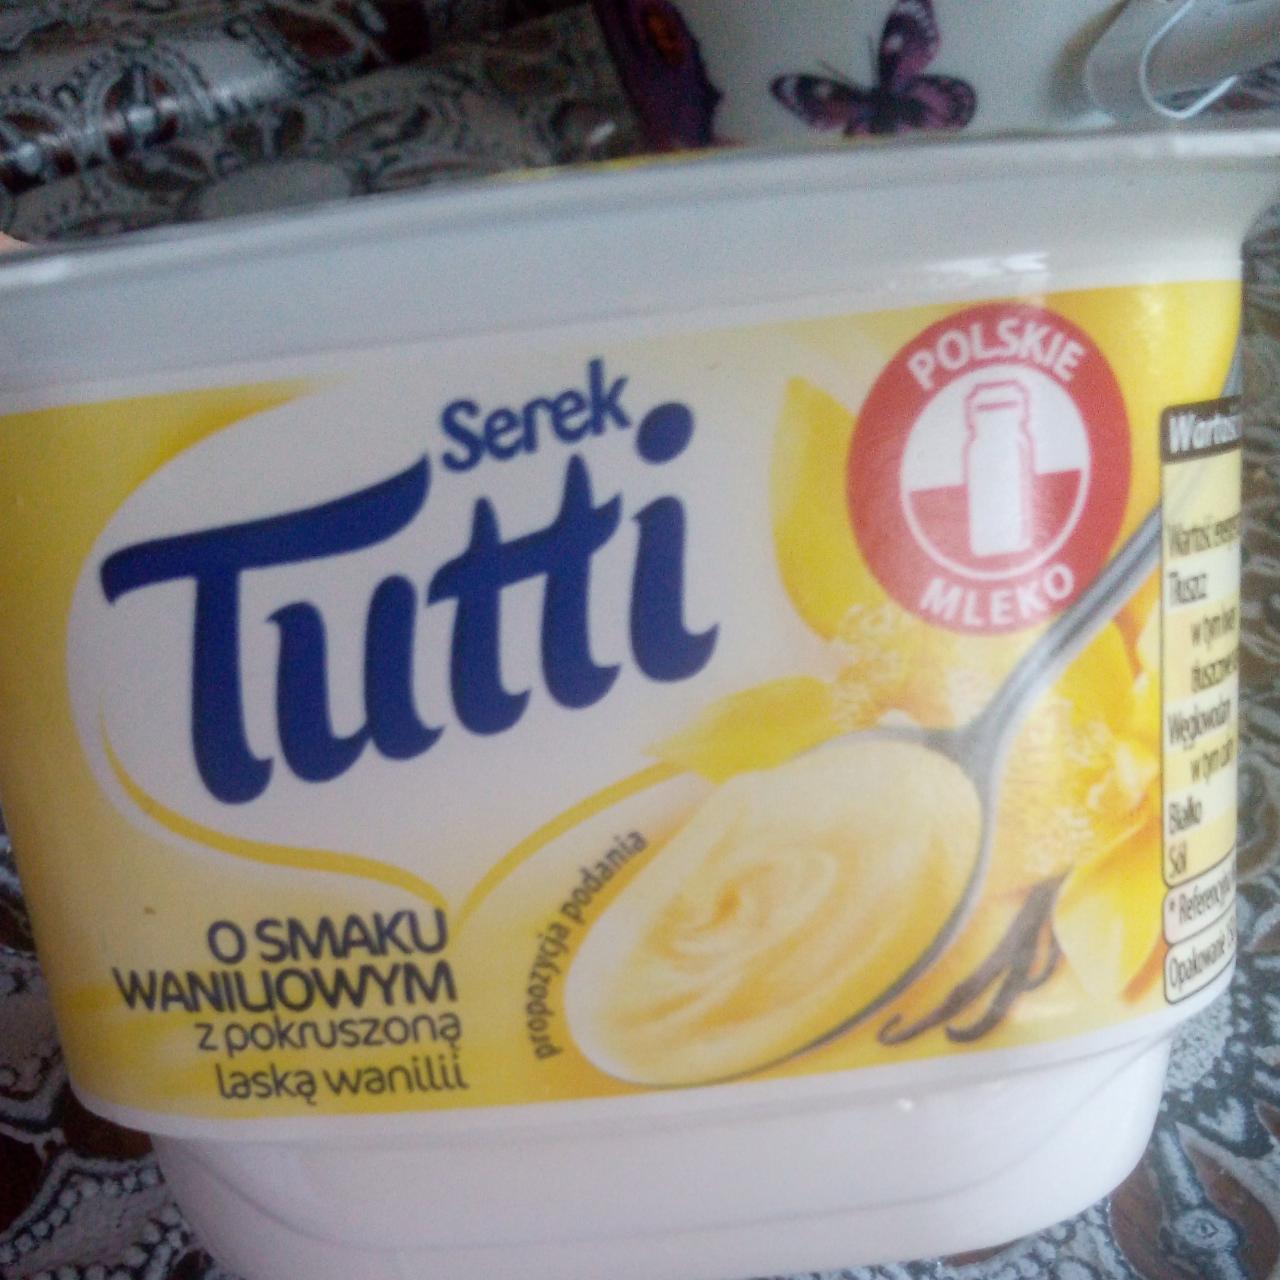 Fotografie - Serek o smaku waniliowym z pokruszoną laską wanilii Tutti